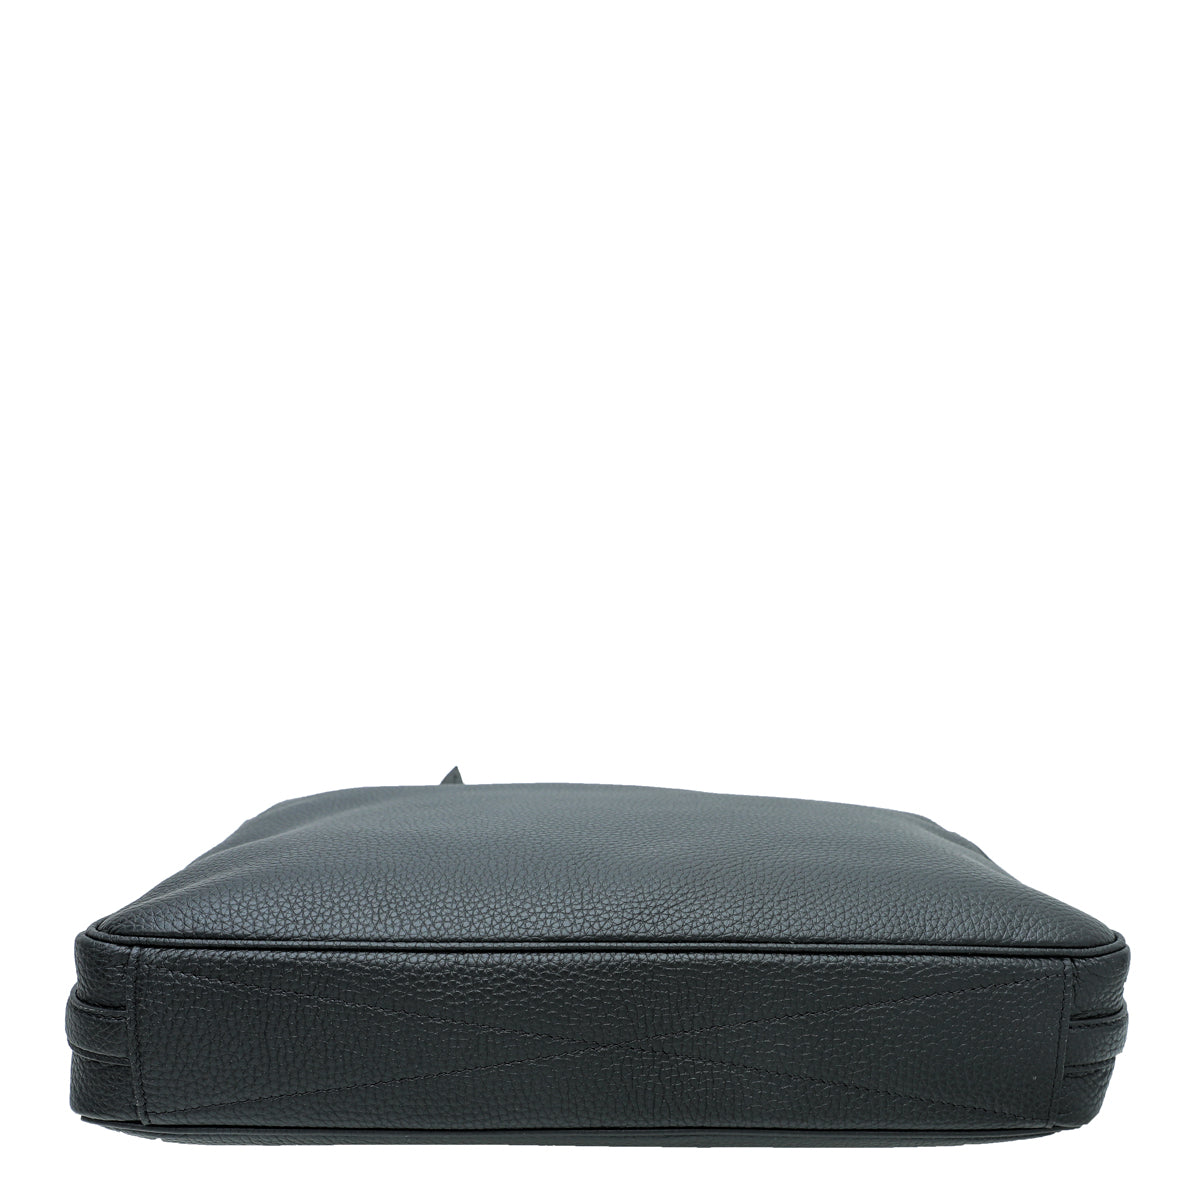 Auth Louis Vuitton Armand Briefcase MM M54381 Noir Black Taurillon Leather  Busin